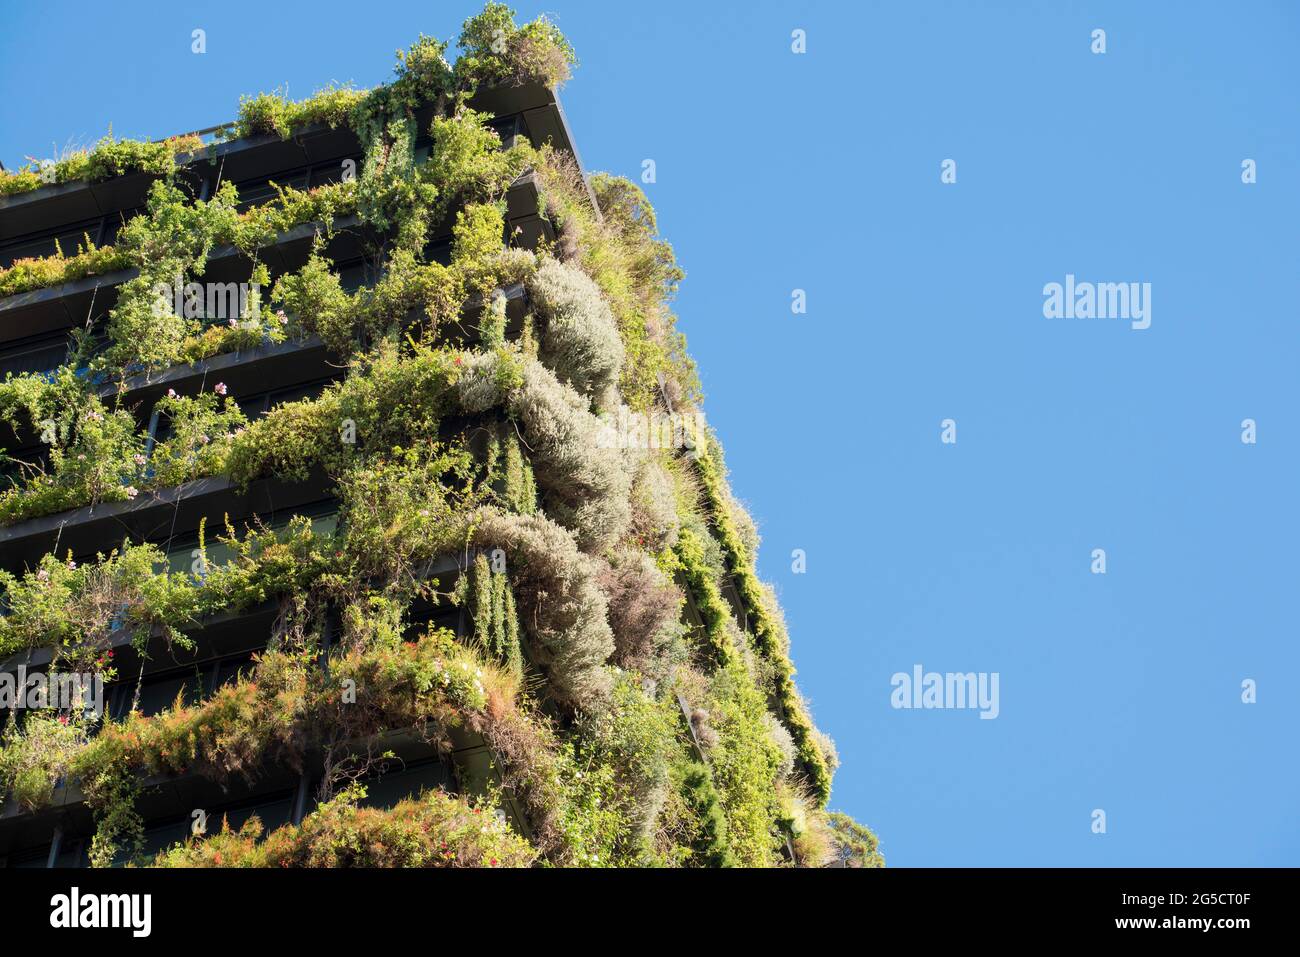 Uno de Central Park, el Jean Nouvel ha diseñado el bloque de apartamentos en Sydney, Australia está cubierto de plantas nativas australianas que se extienden hacia arriba desde el suelo. Foto de stock